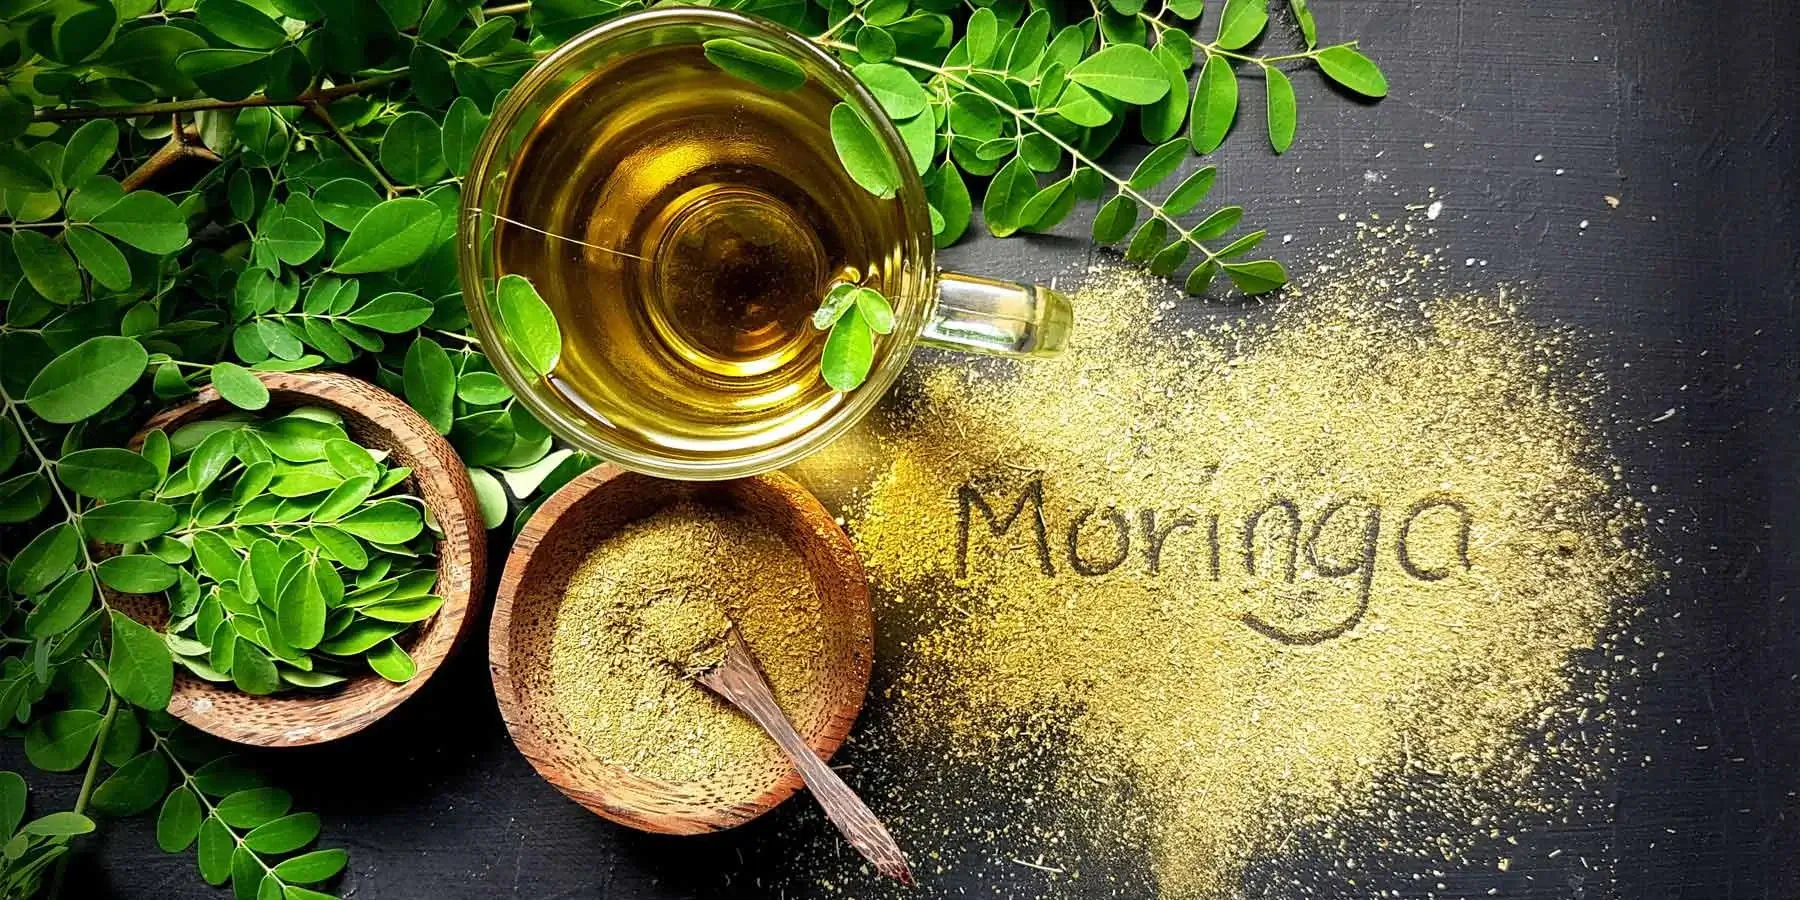 Benefits and Uses of Moringa